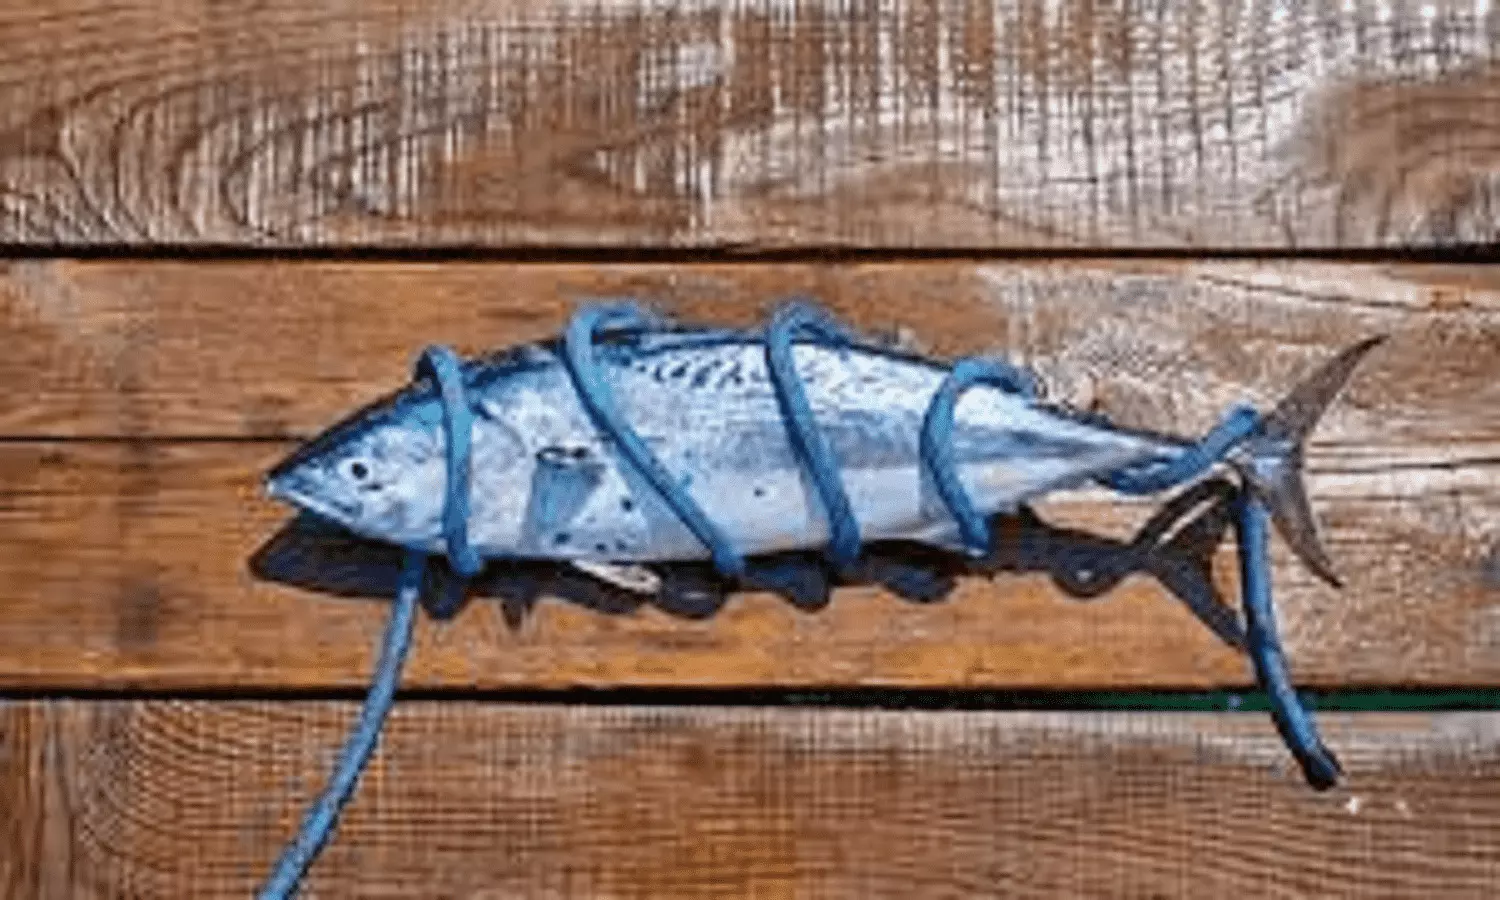 Bluefin Tuna Fish